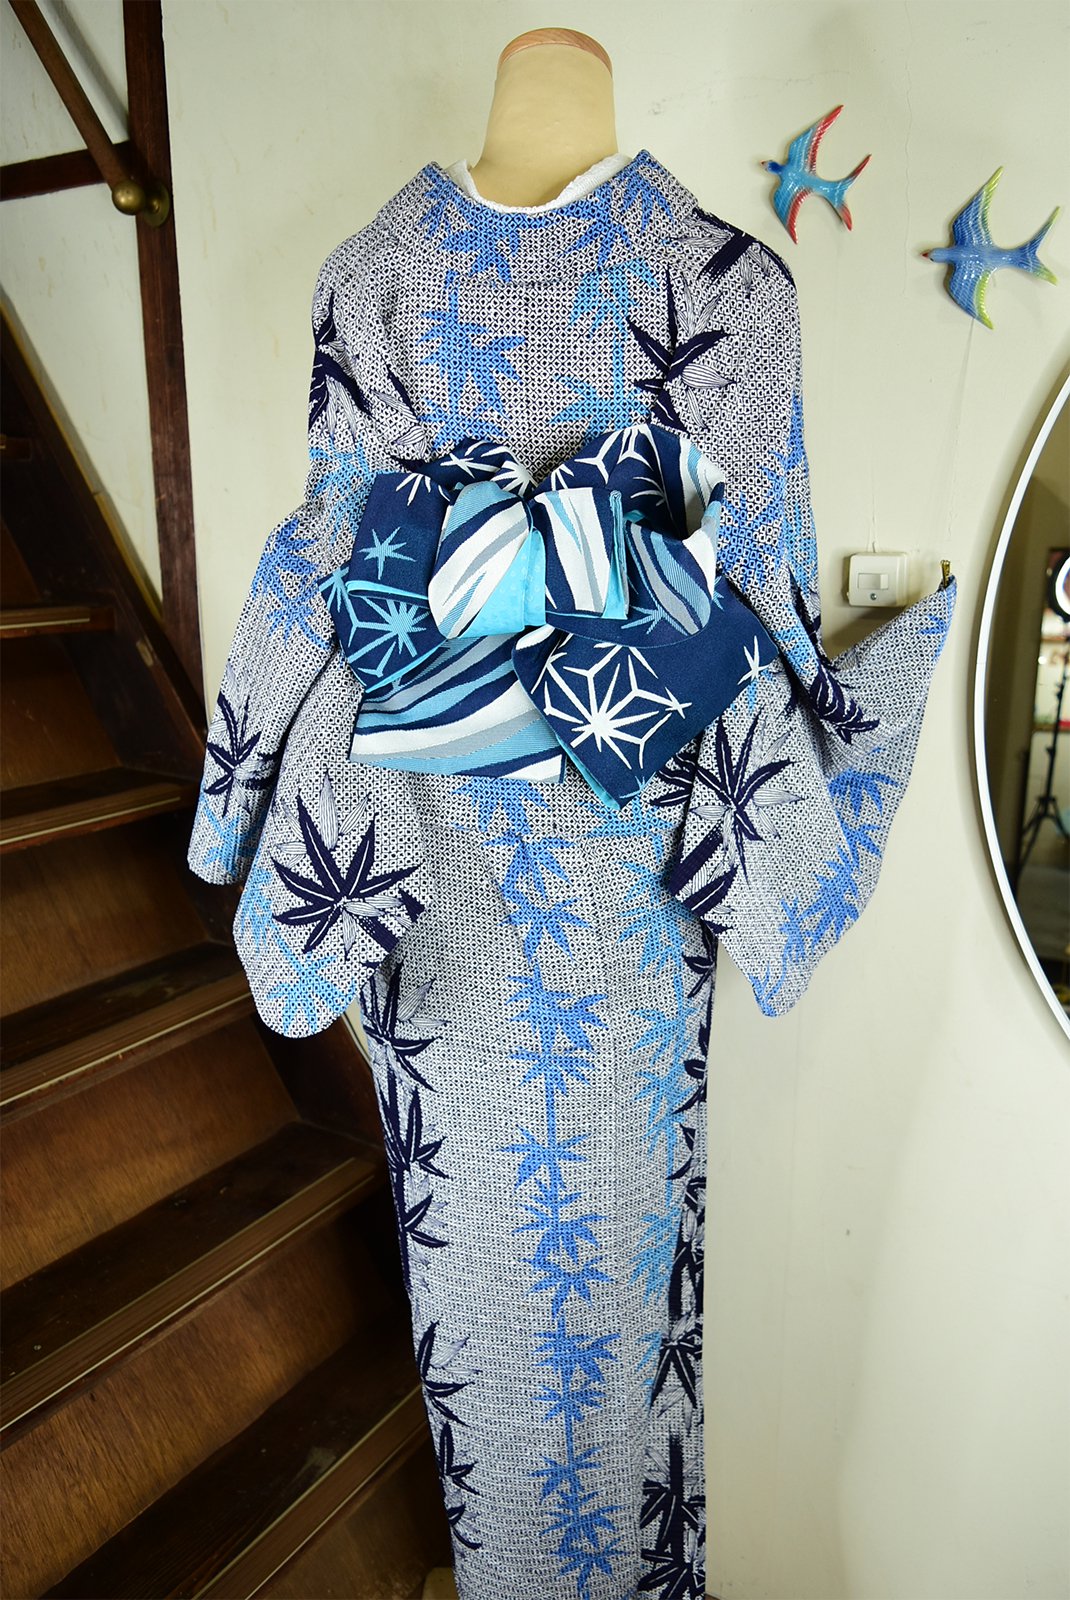 内祝い】 ☆お客様決定☆絞り風浴衣、リップル加工▫藍色濃淡で琉球風 